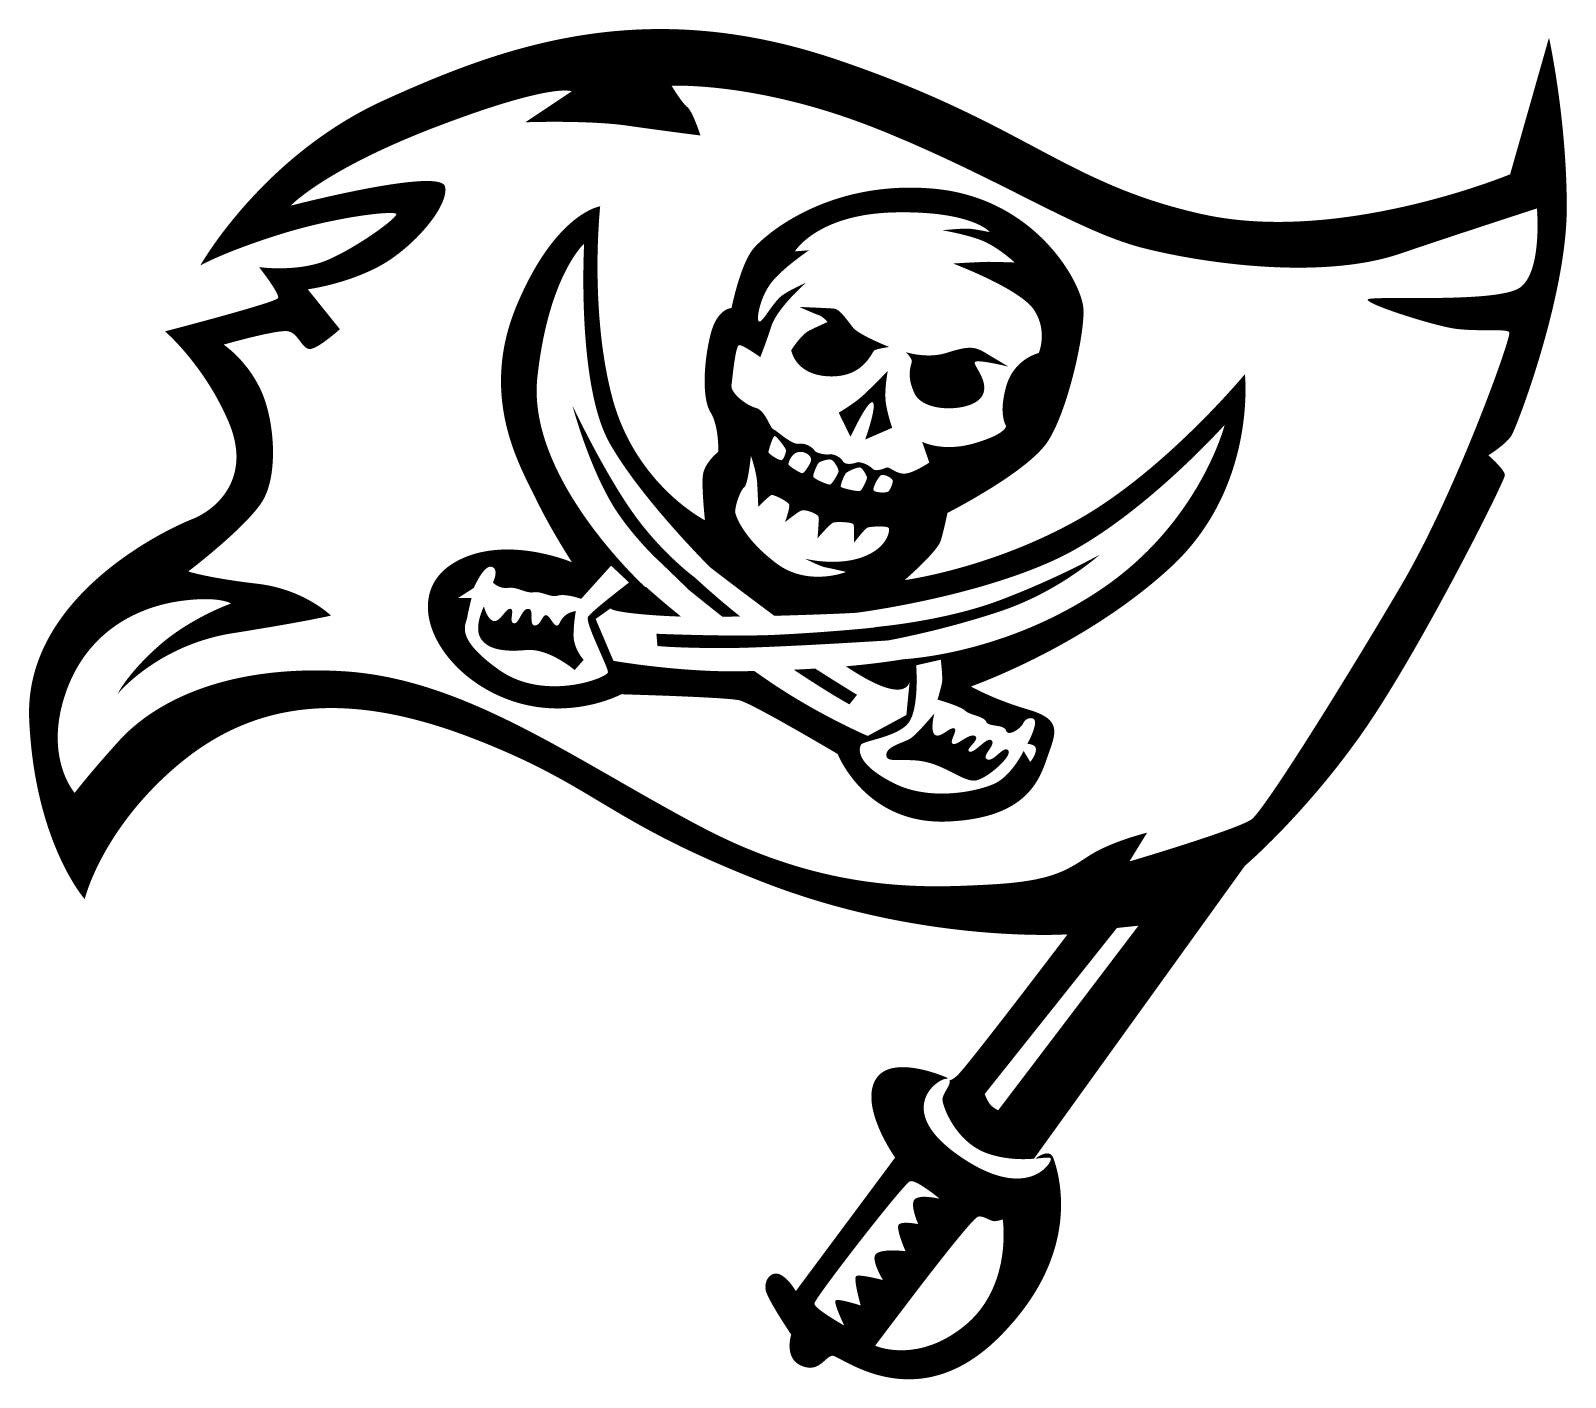 Пиратская ж. Пиратский флаг. Пиратские символы. Пиратская эмблема.